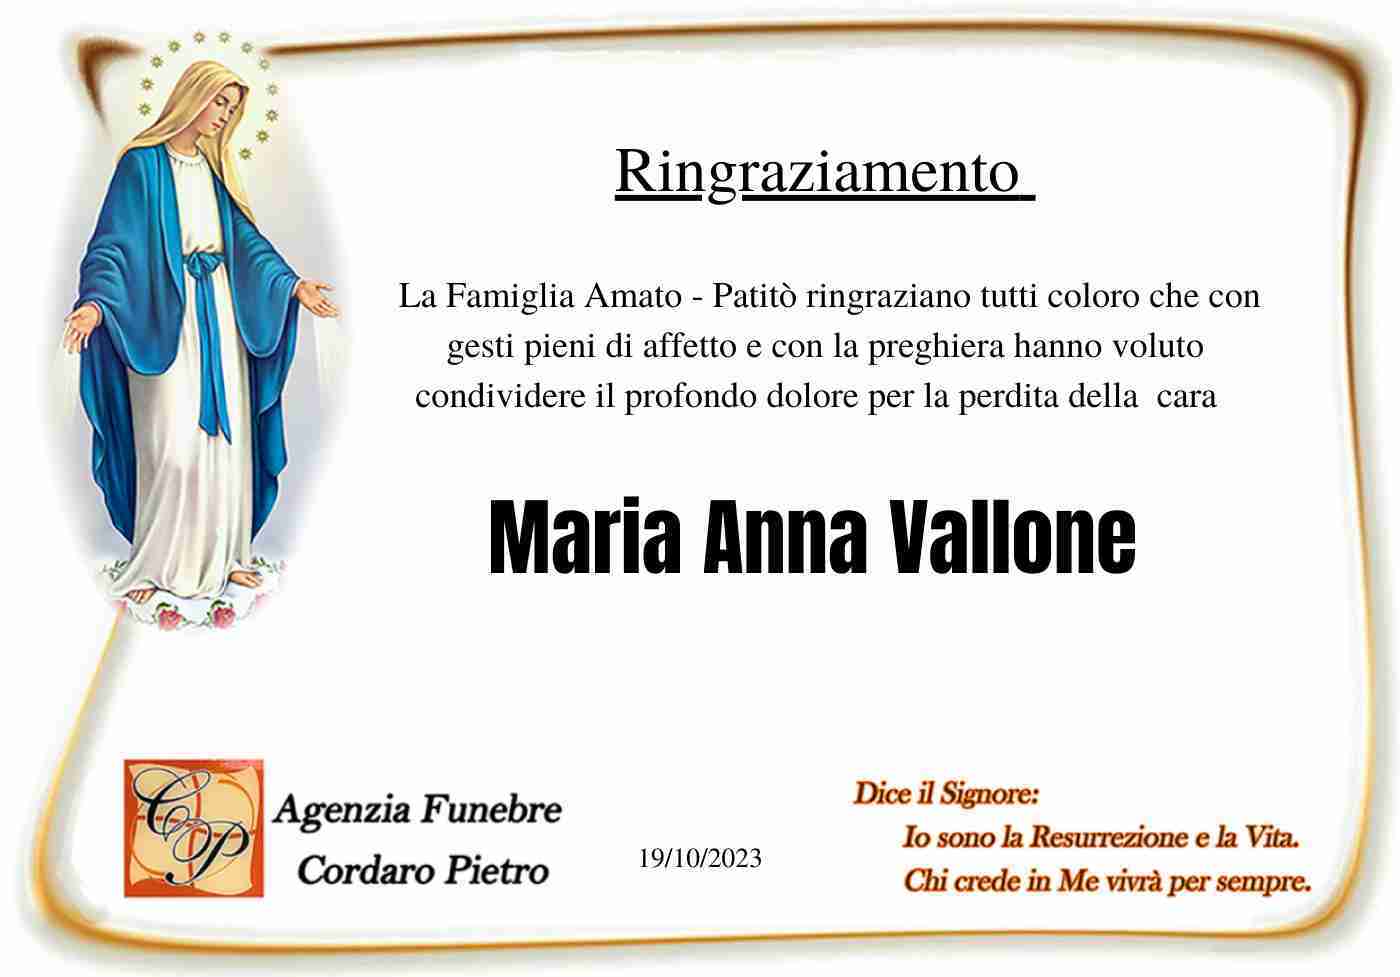 Maria Anna Vallone